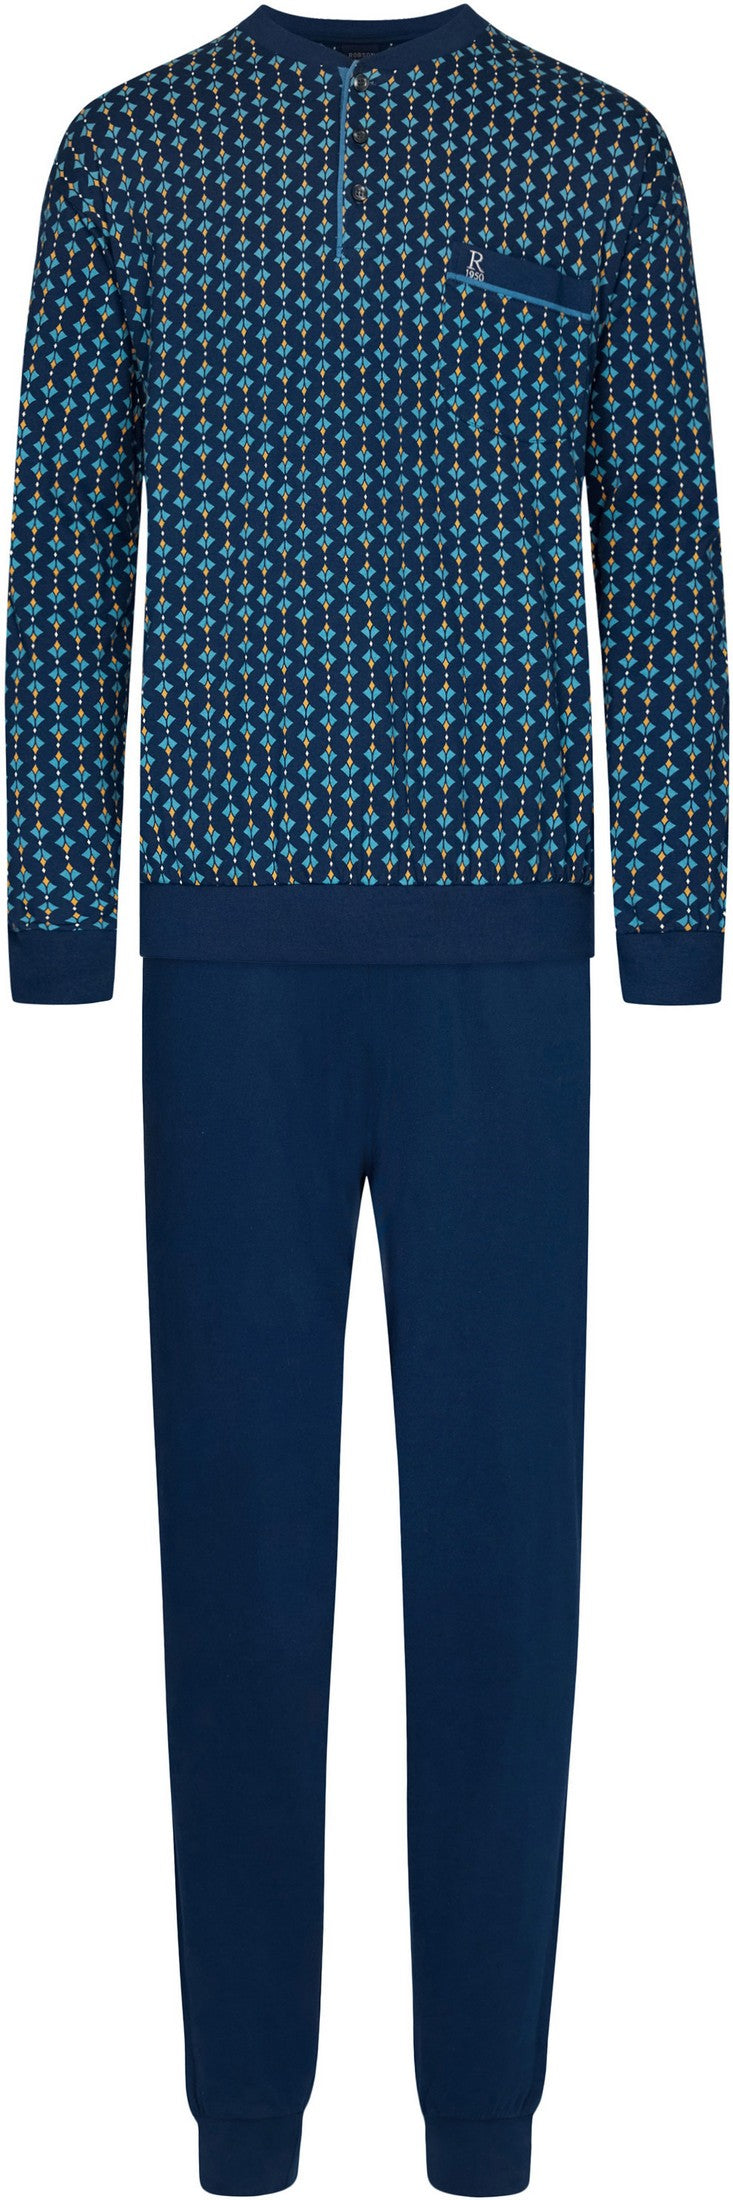 Pyjama 27232-704-4 526 blauw